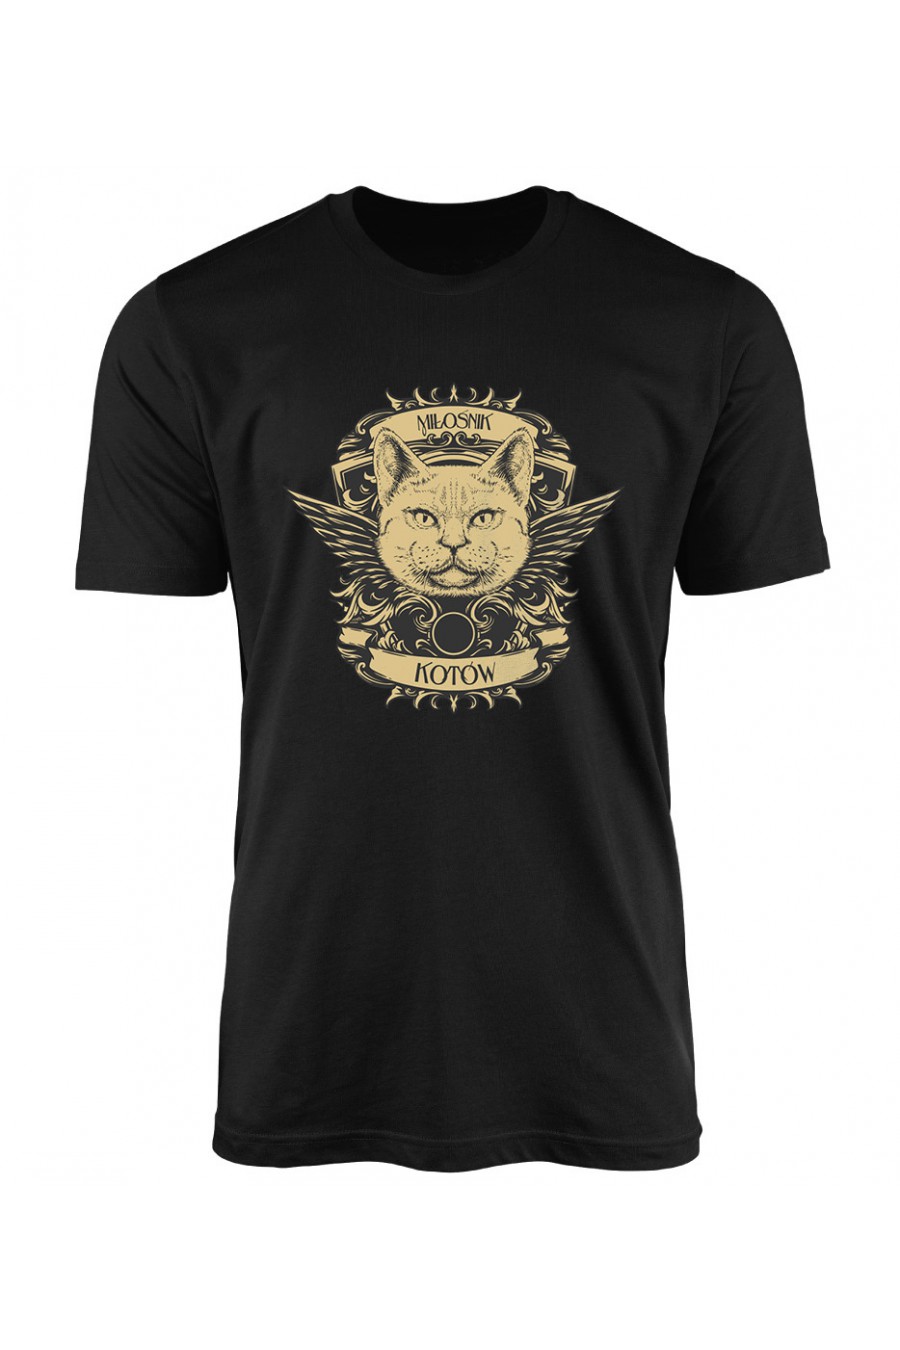 Koszulka Męska Miłośnik Kotów